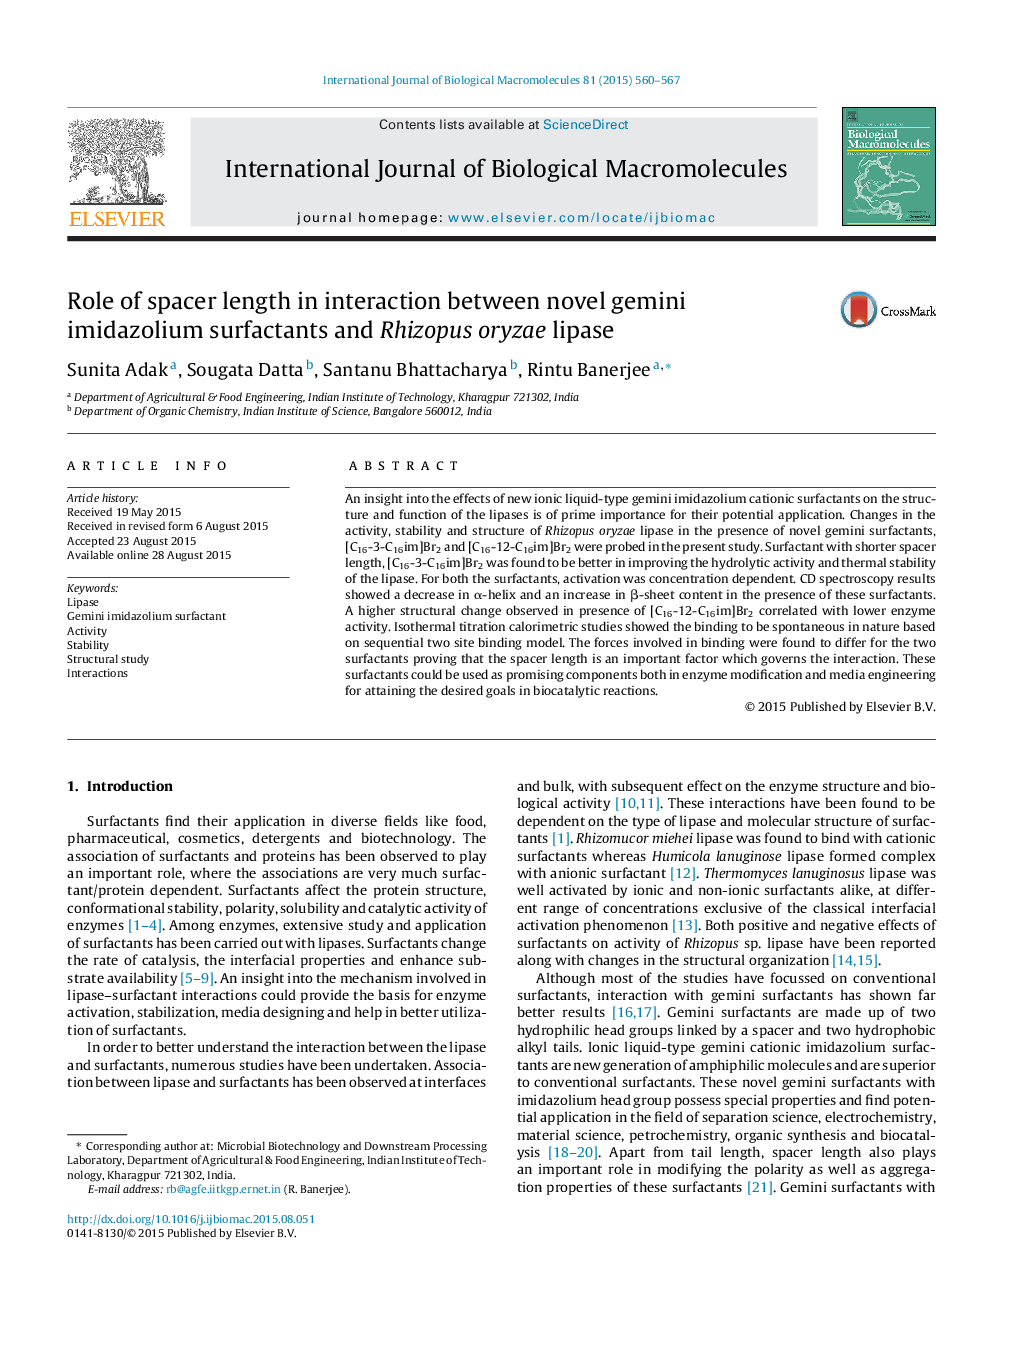 نقش طول فاصله ای در تعامل بین سورفاکتانتهای جدید ایمیدازولیوم جین و ریزوپوس ارزیلا لیپاز 